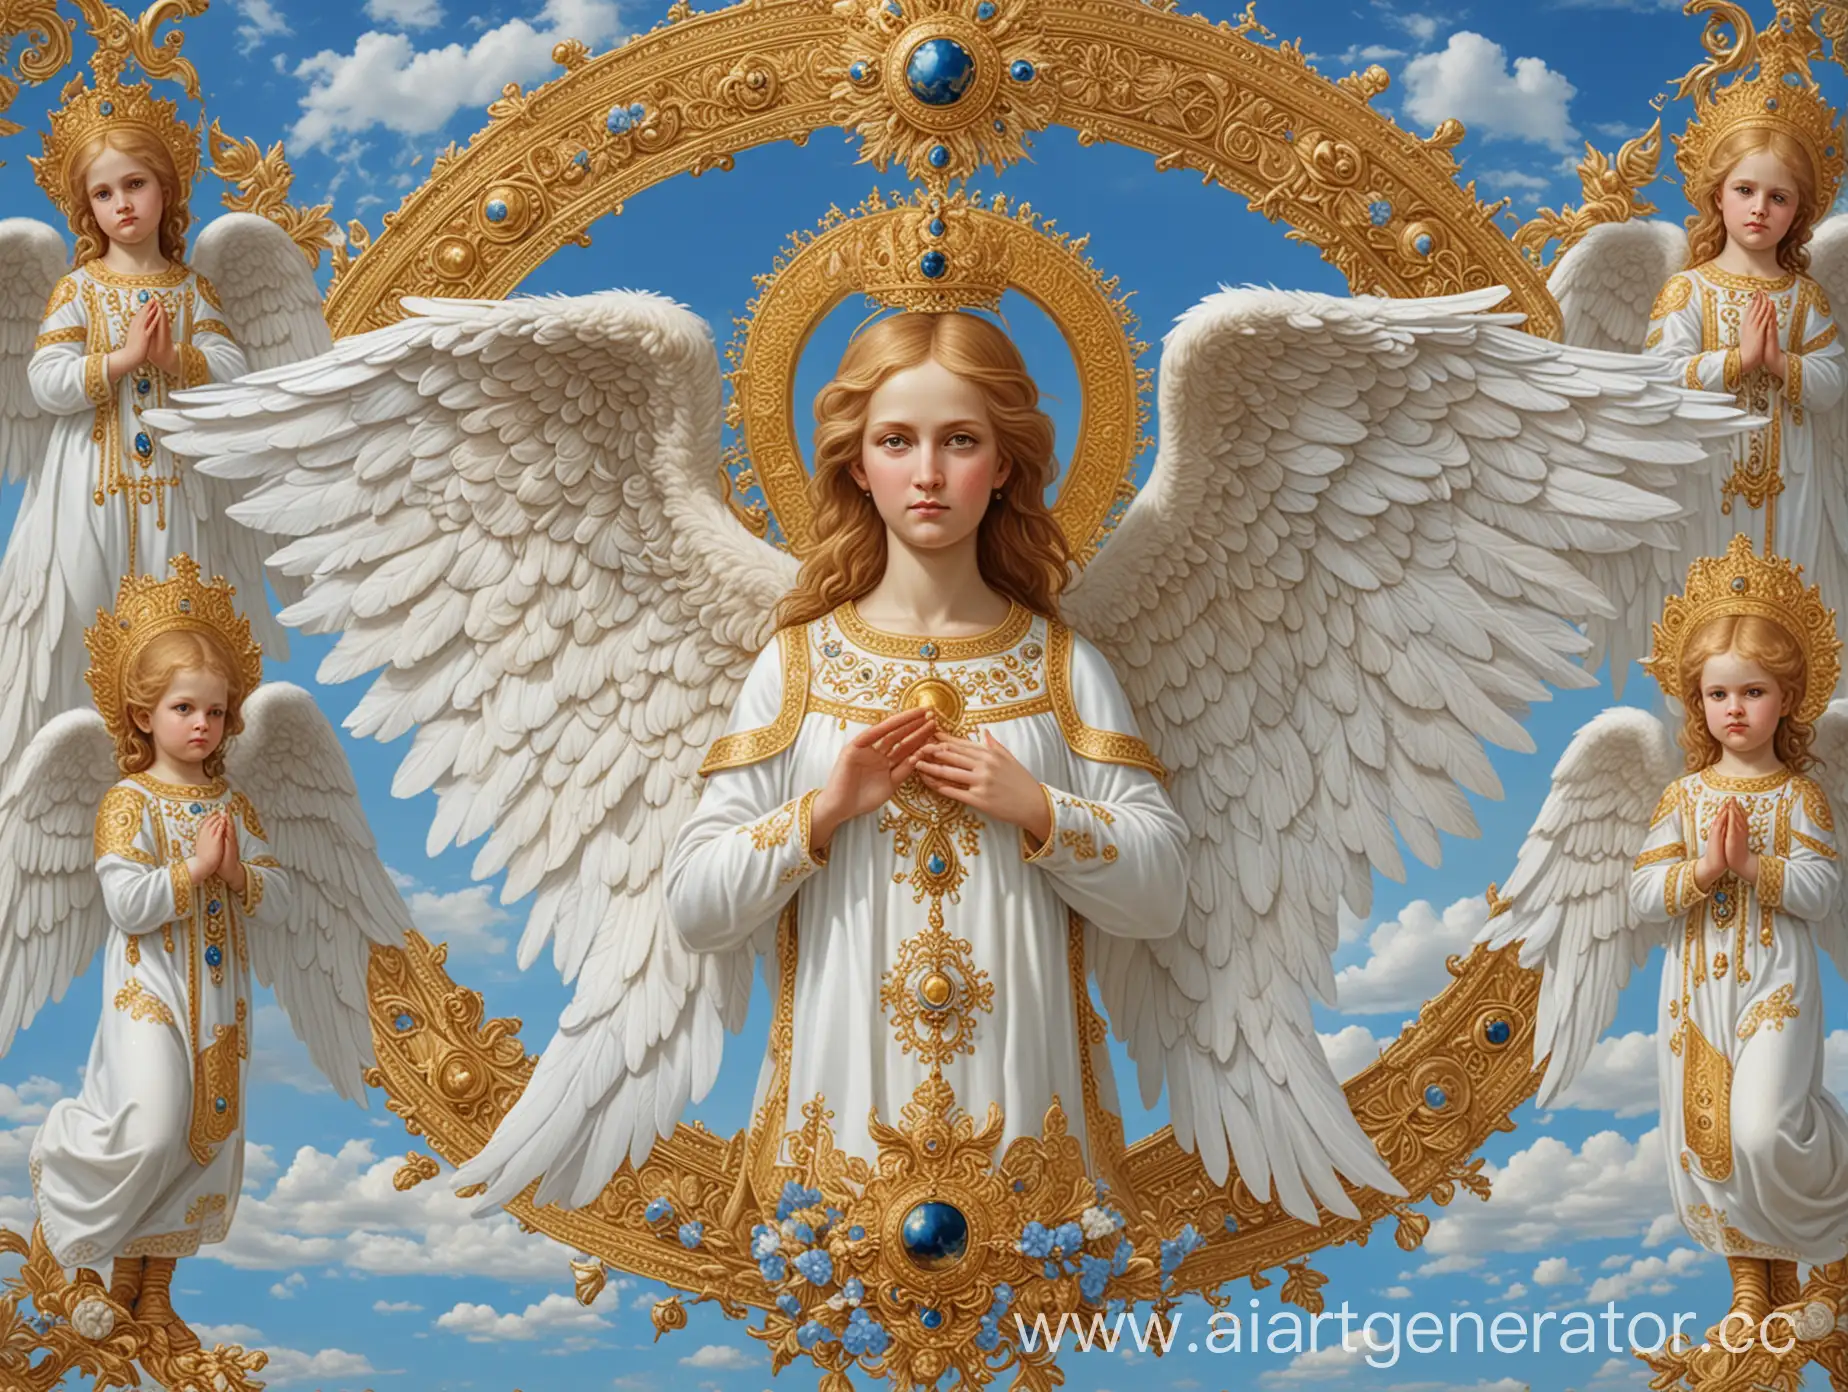 Высшие ангелы серафимы, руки и белые крылья, королевская семья Романовых, золотой и белый цвет, мелкие узоры, голубое небо